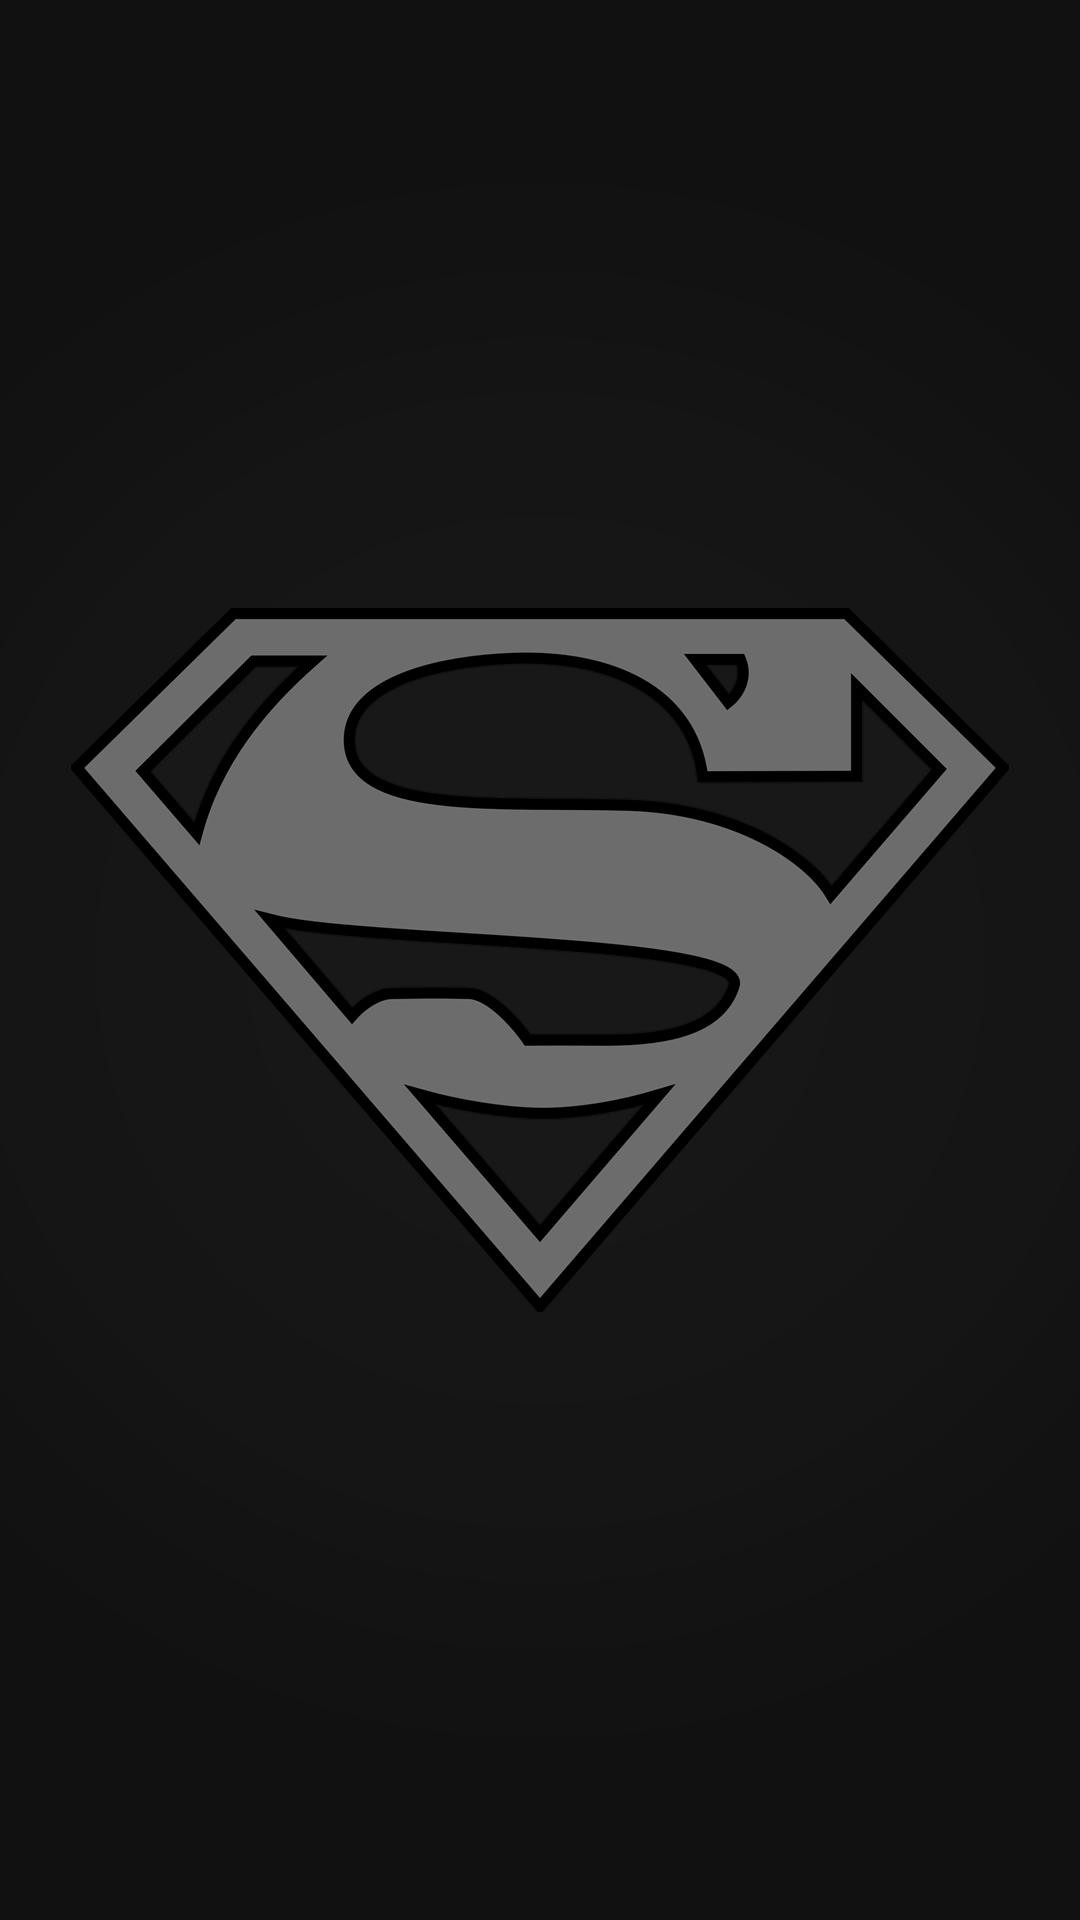 fond d'écran iphone superman,superman,personnage fictif,ligue de justice,super héros,police de caractère